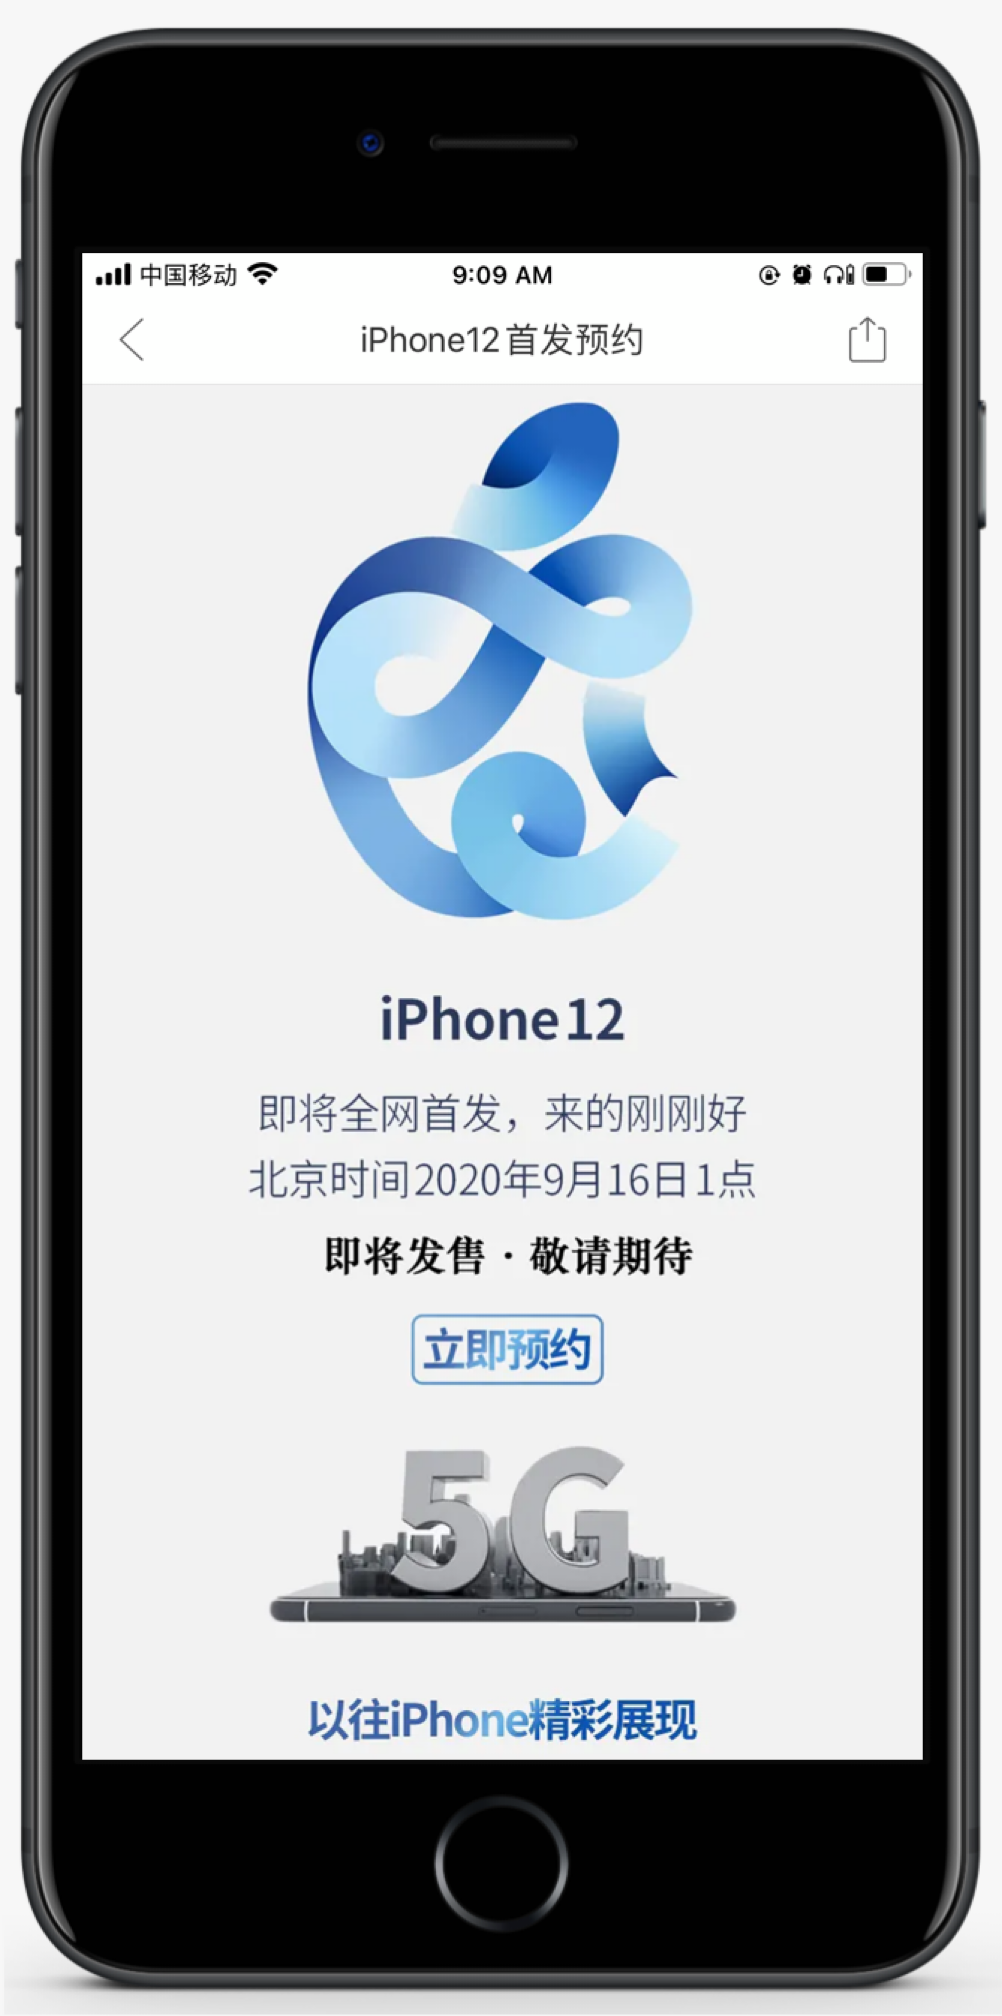 苹果追踪设备 AirTag 曝光﹨拼多多开启 iPhone 12 预约？别当真！